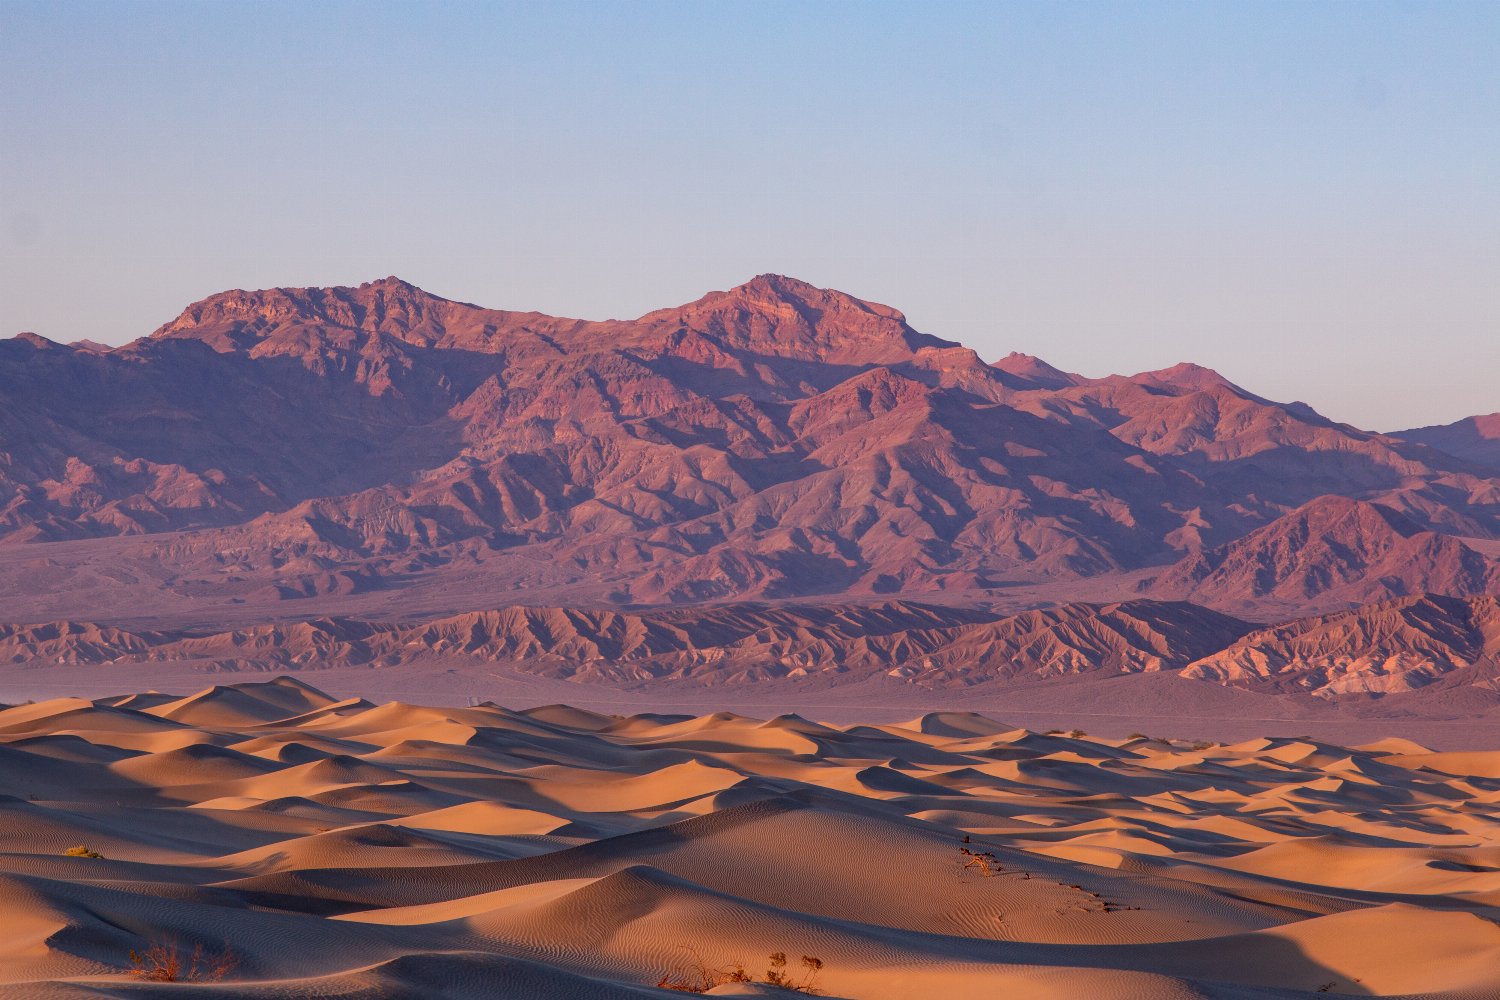 Desert sand dunes in Death Valley